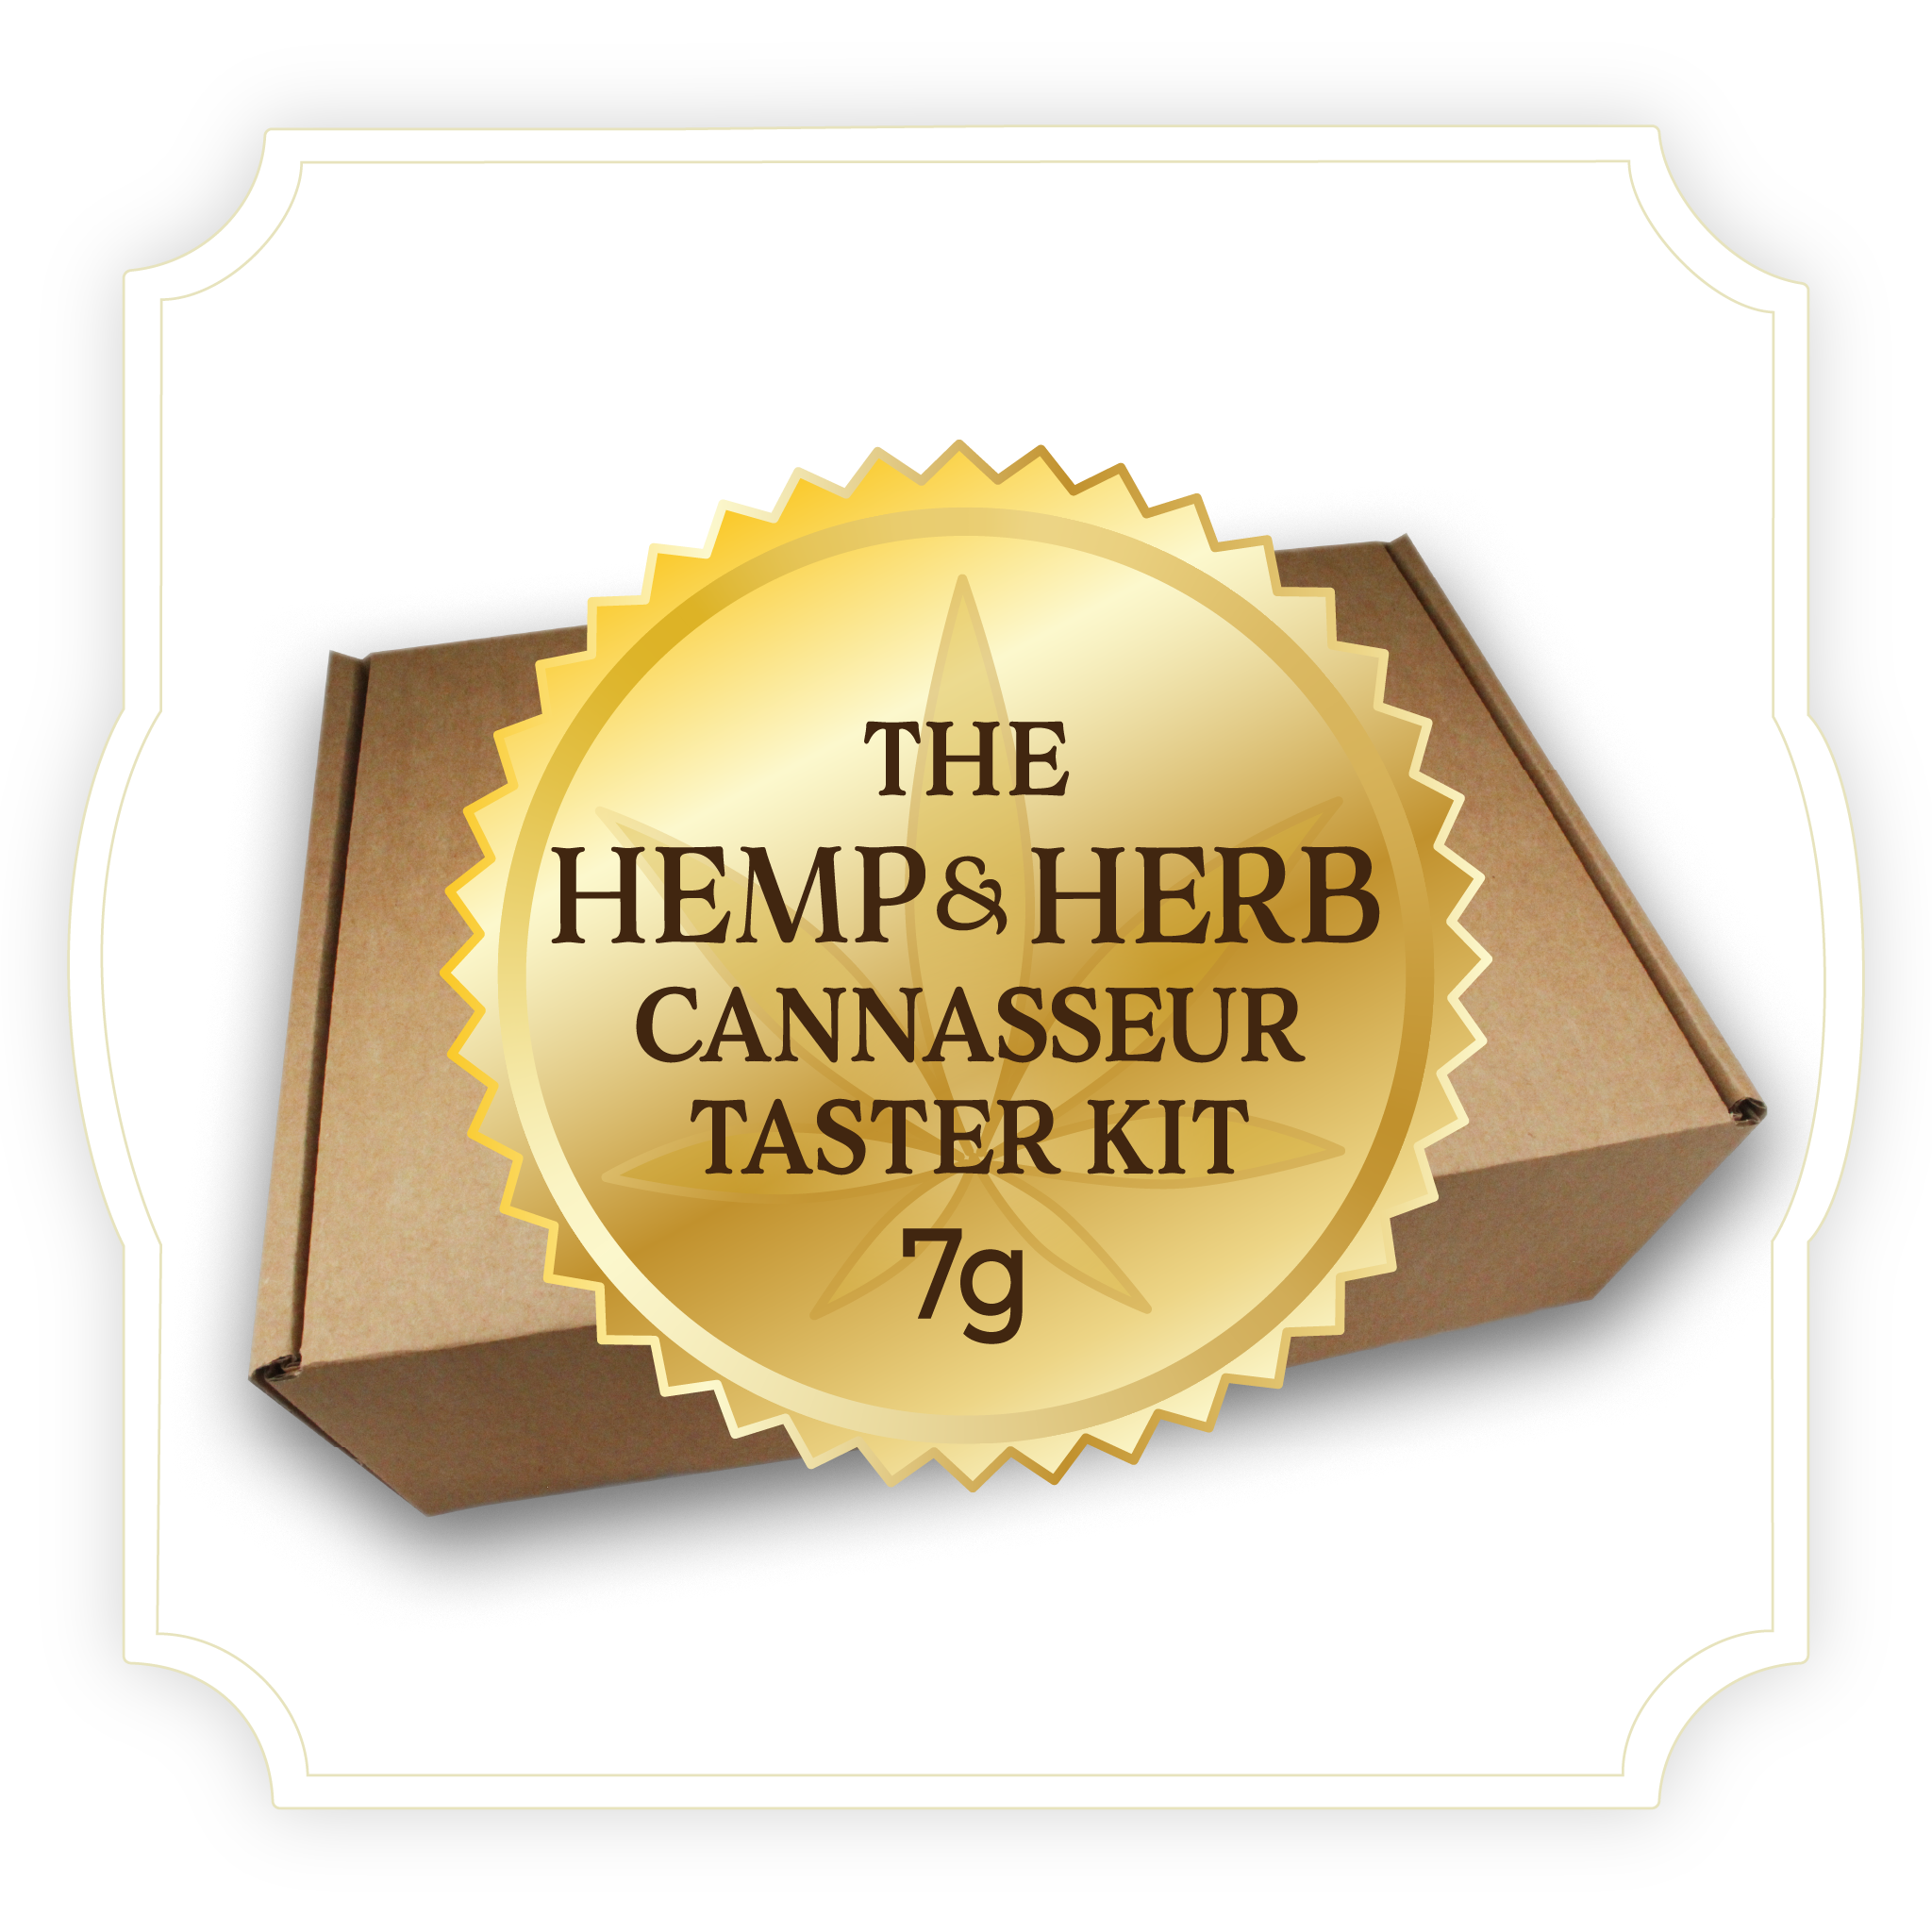 The 7g Hemp & Herb Cannasseur Taster Kit | Premium Hemp Variety Box | Build Your Own Custom Kit